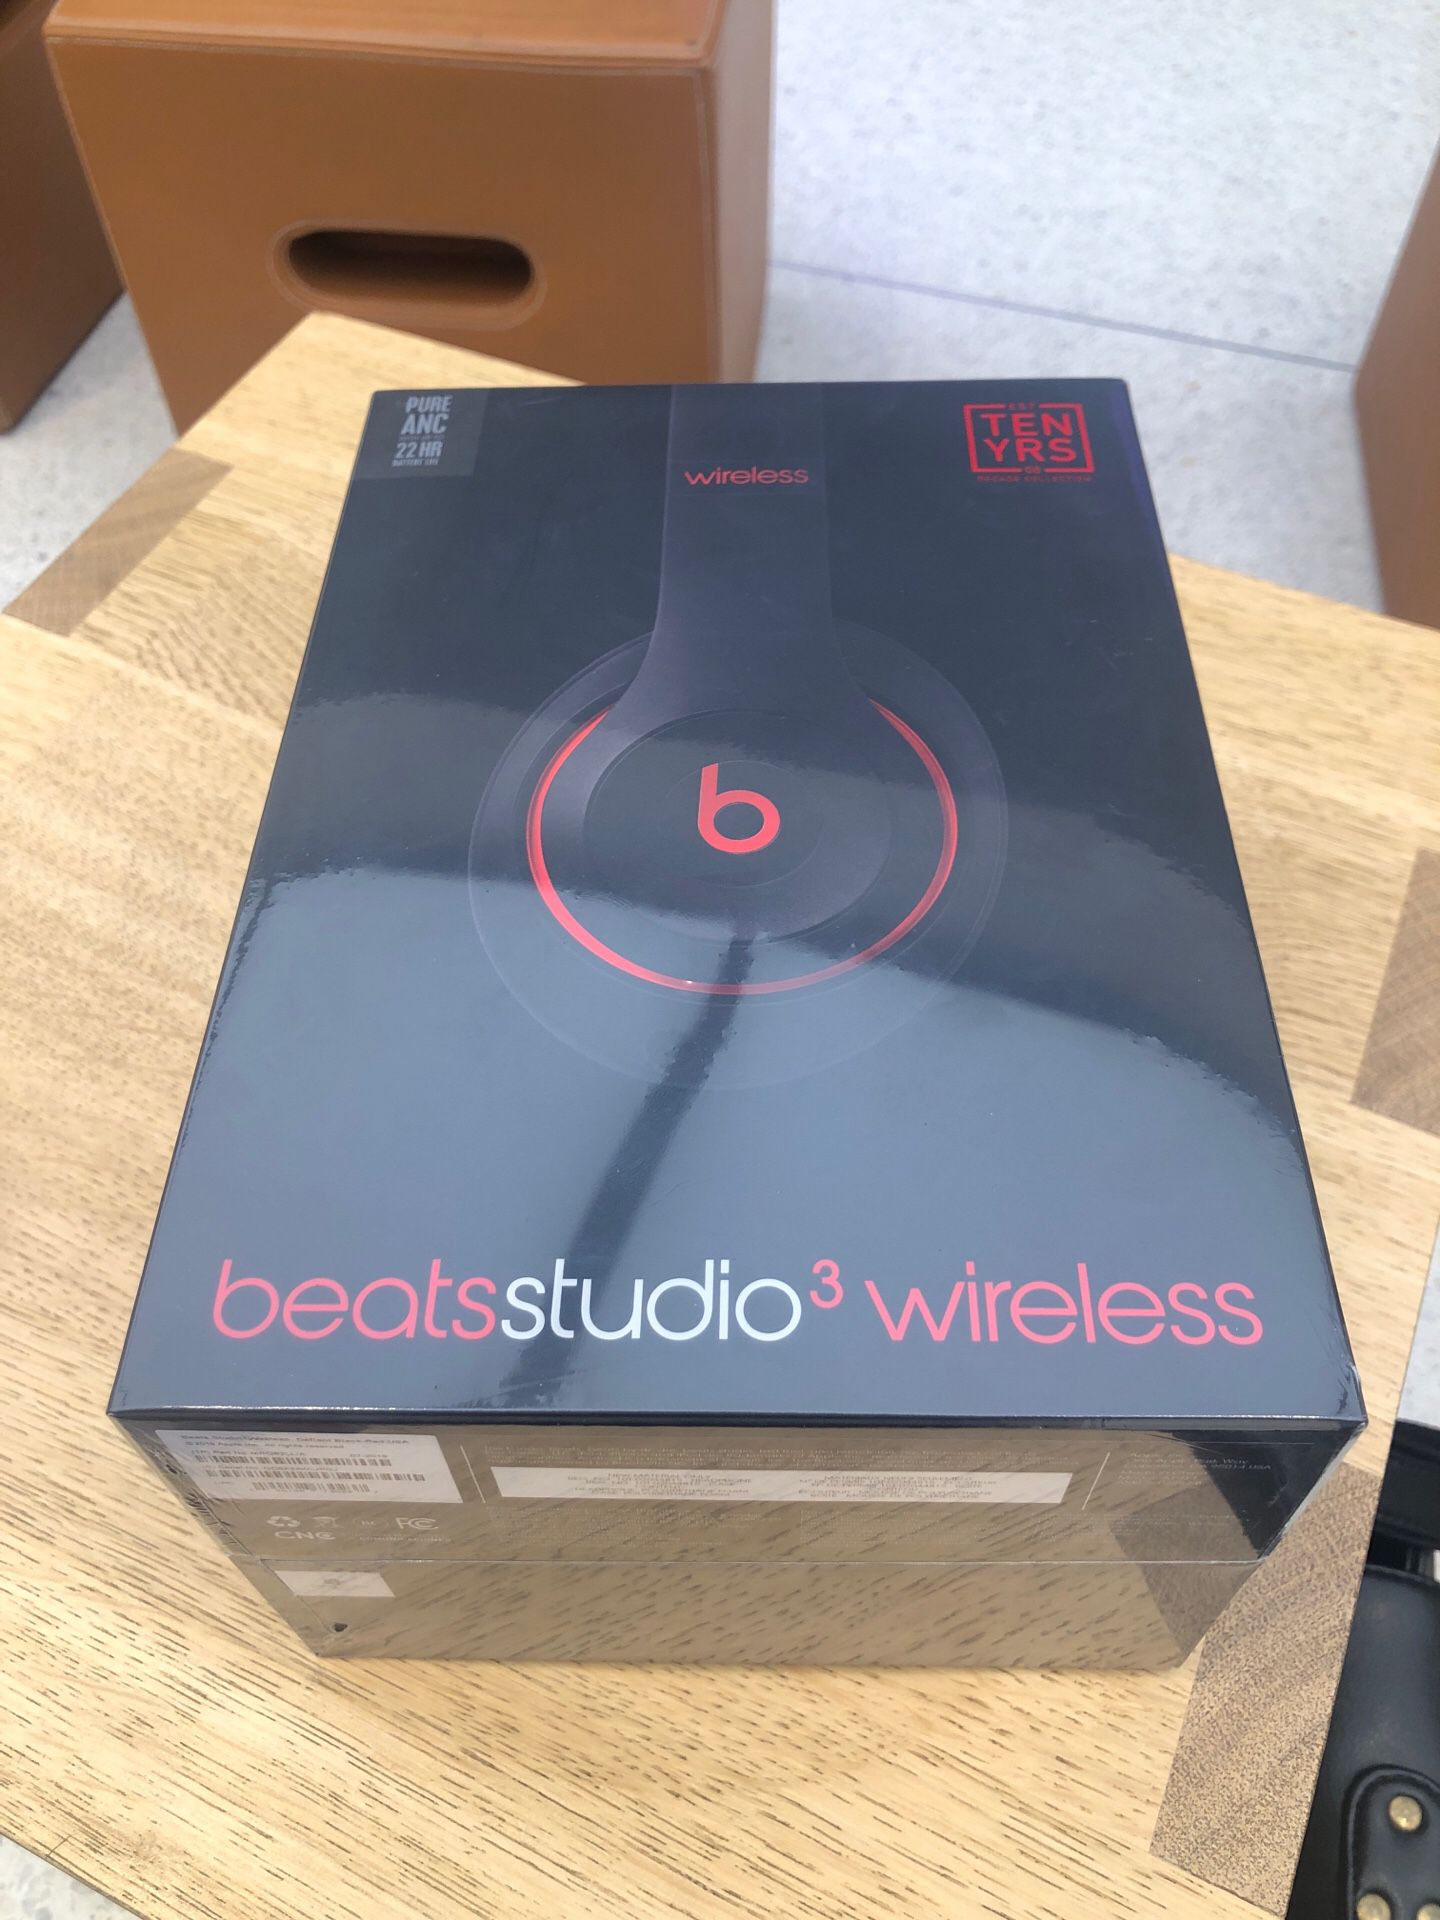 Beatsstudio 3 wireless UNOPENED